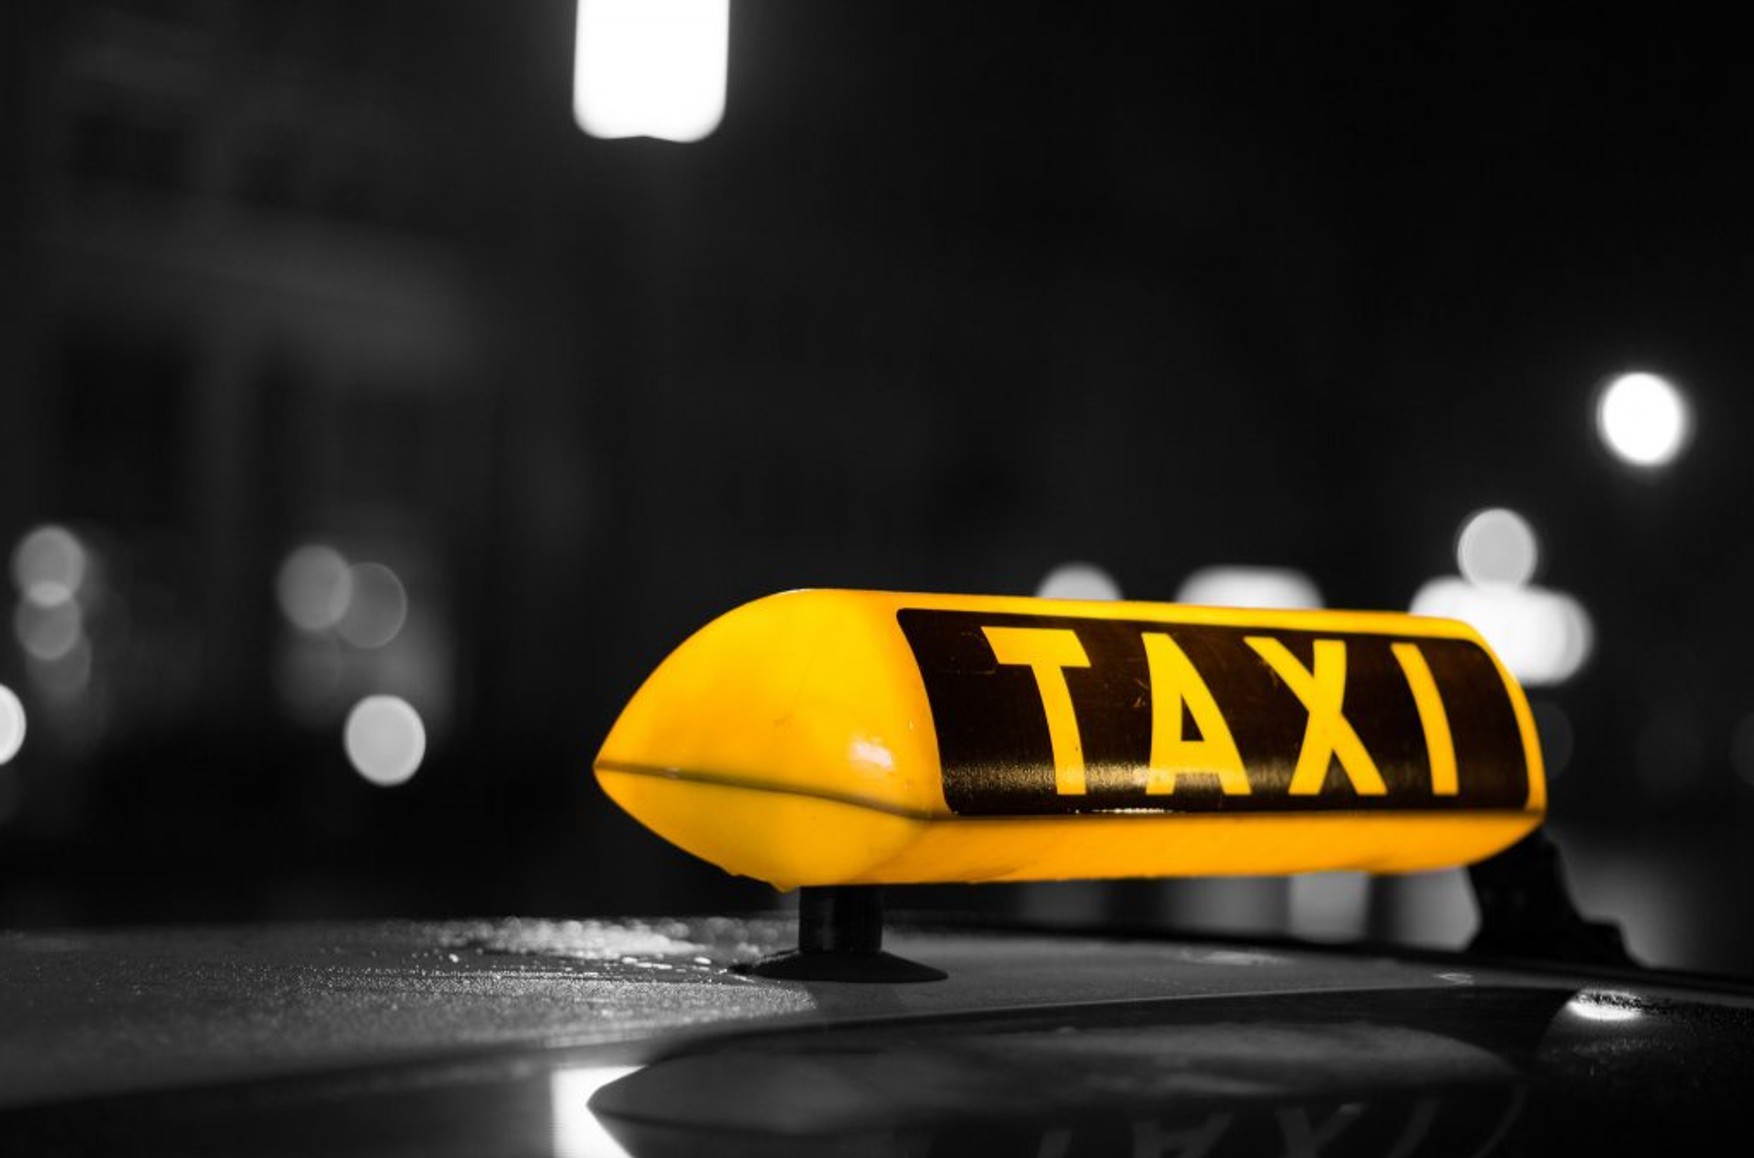 Людям с судимостью за ряд преступлений запретят работать водителями такси и автобусов. Таксистов без справок об отсутствии судимости уволят